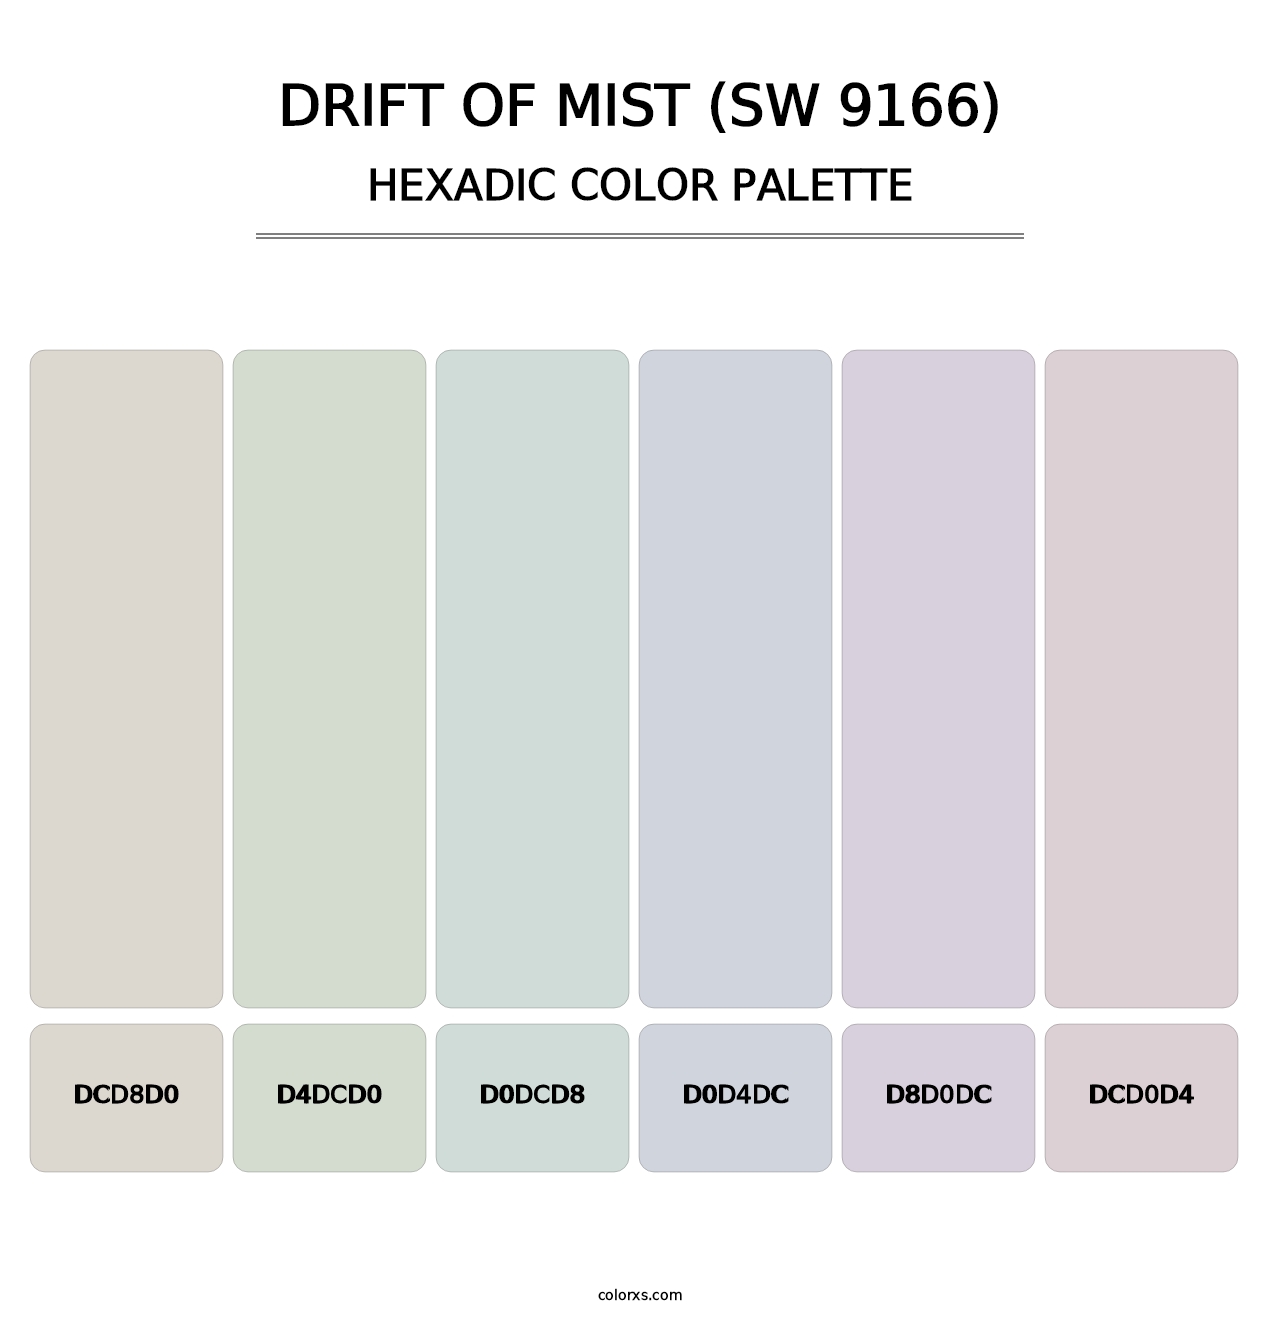 Drift of Mist (SW 9166) - Hexadic Color Palette